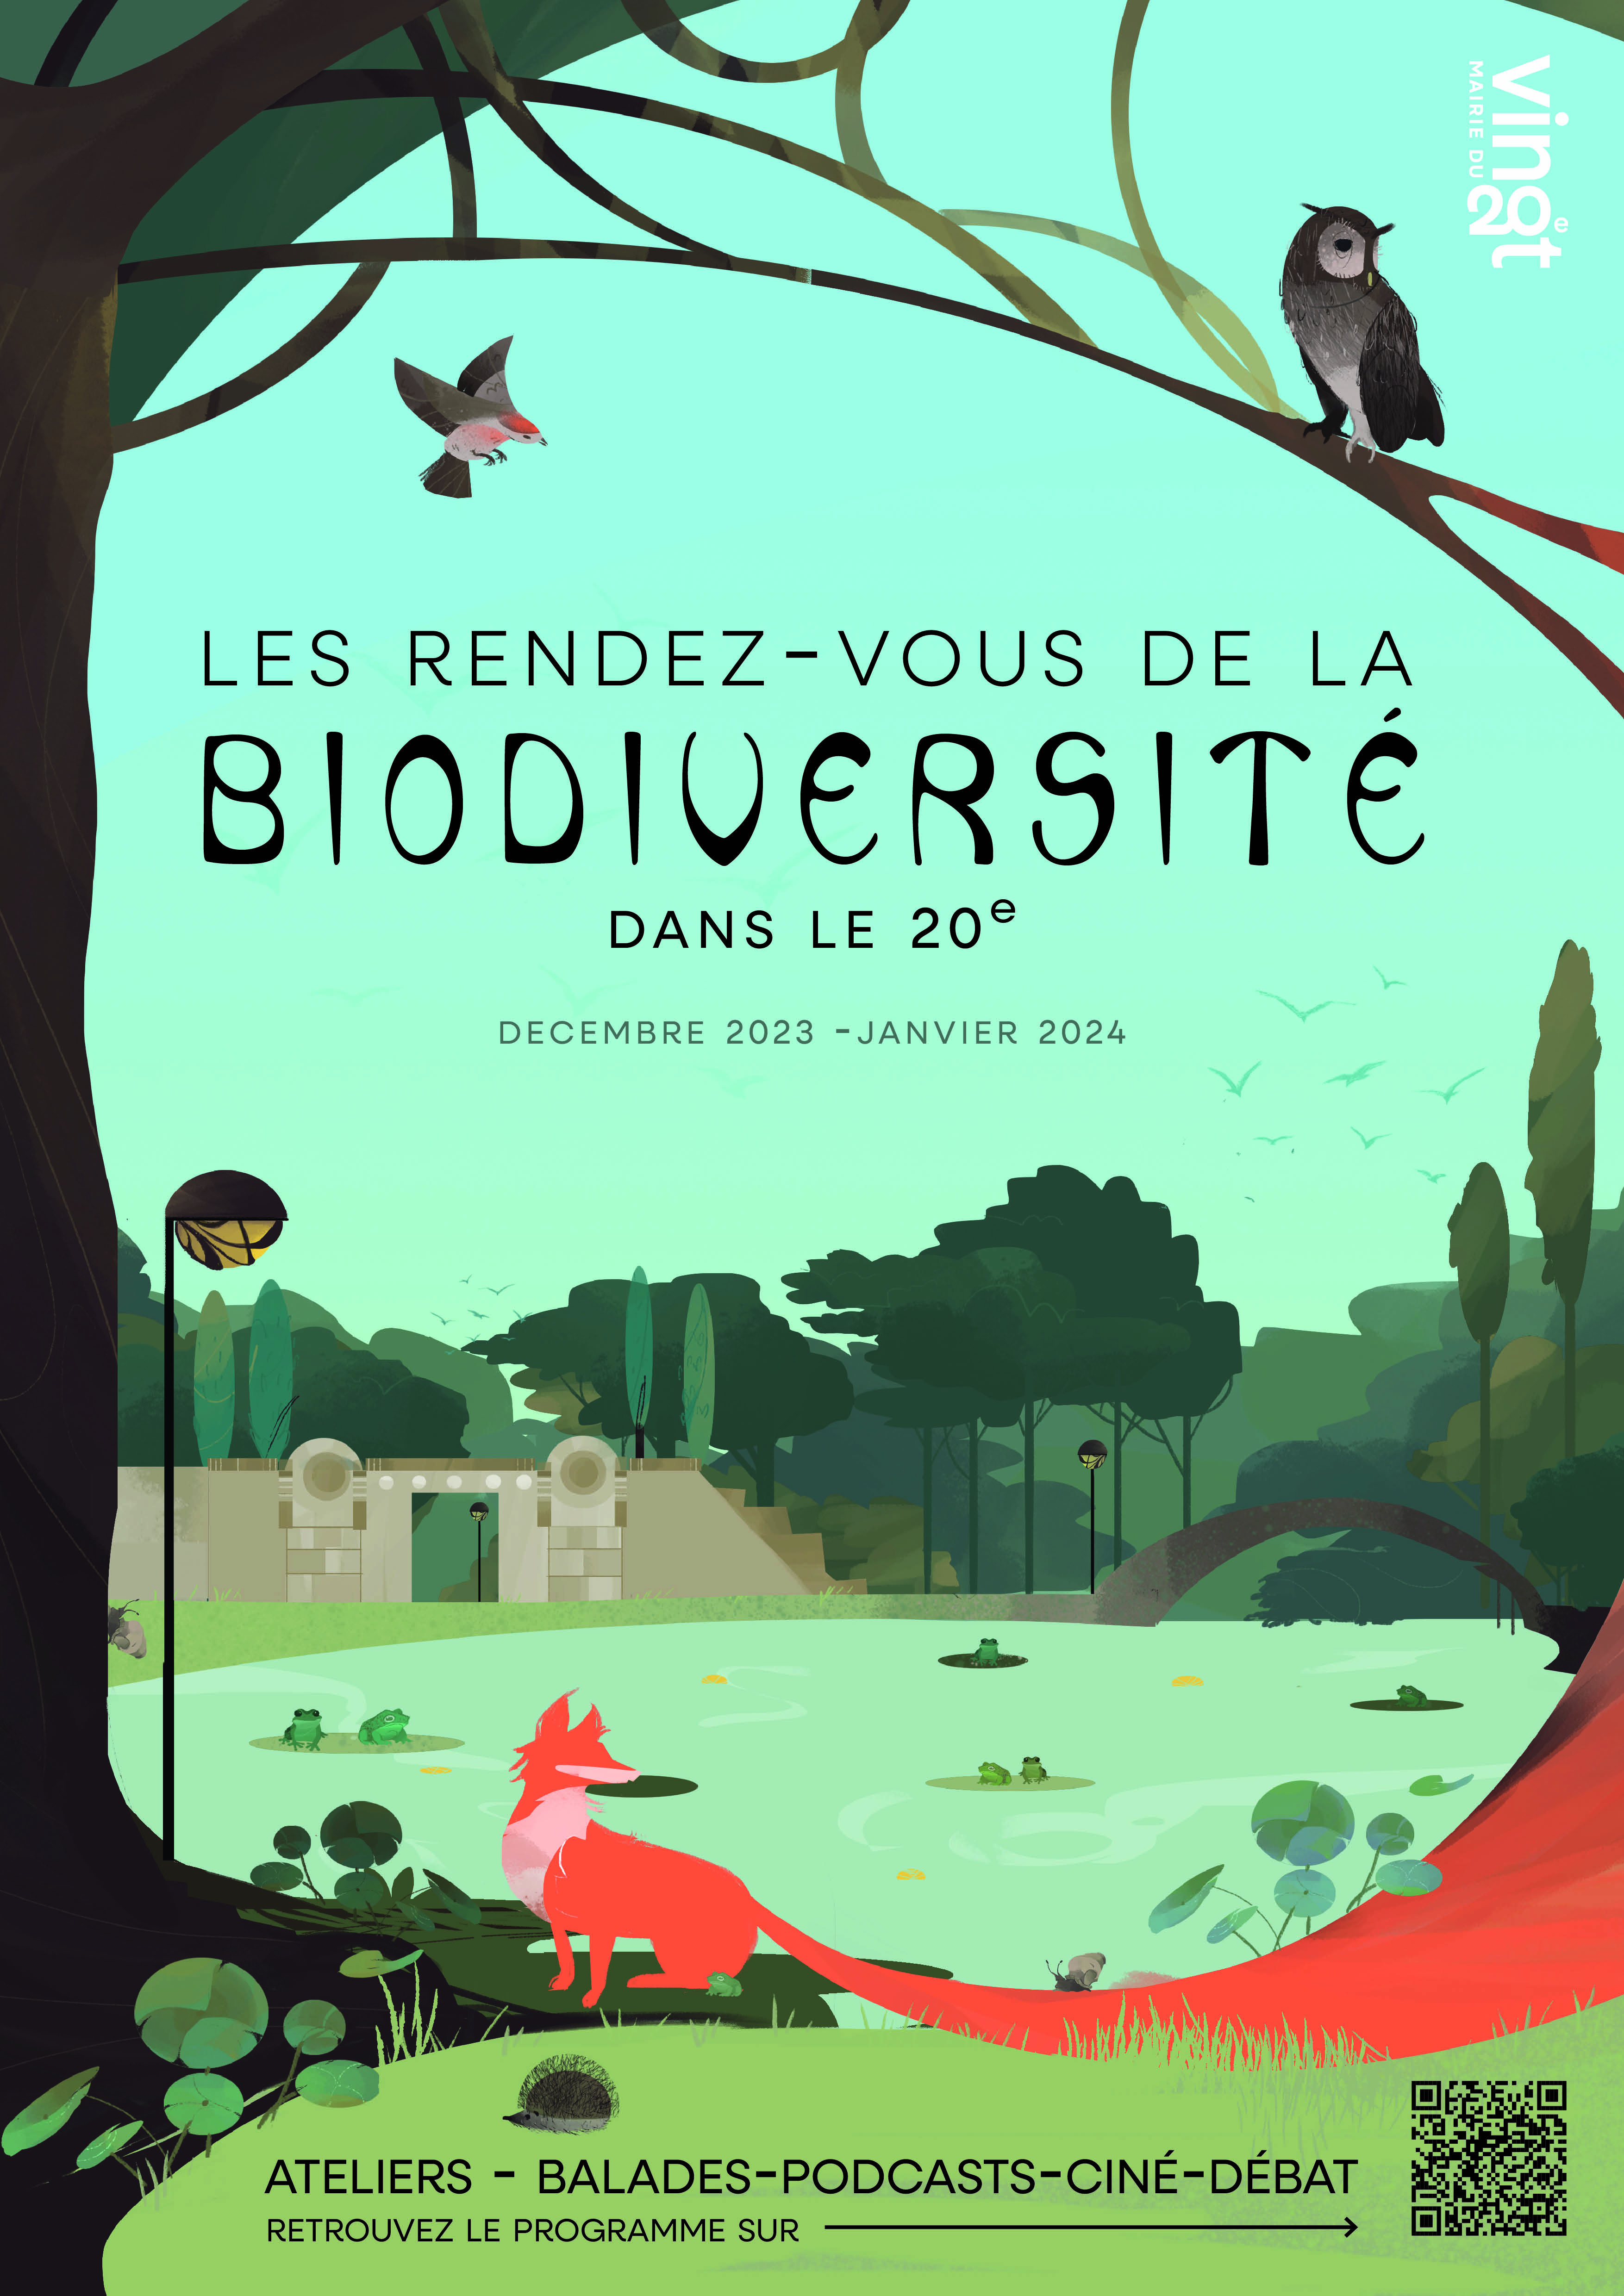 Les Rendez-vous de la biodiversité dans le 20e